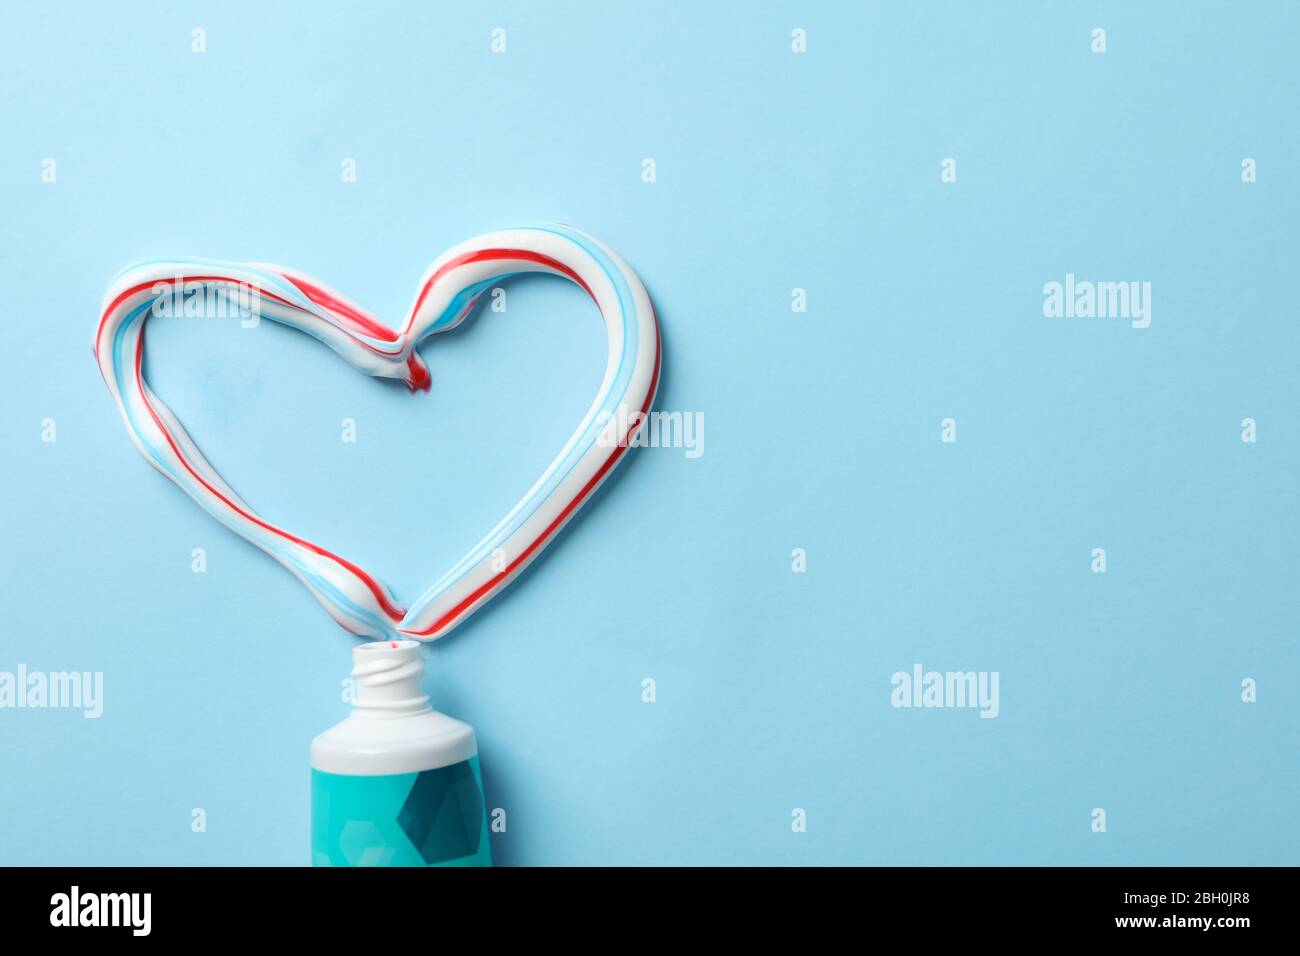 Herz aus Zahnpasta und Röhrchen auf blauem Hintergrund, Draufsicht  Stockfotografie - Alamy